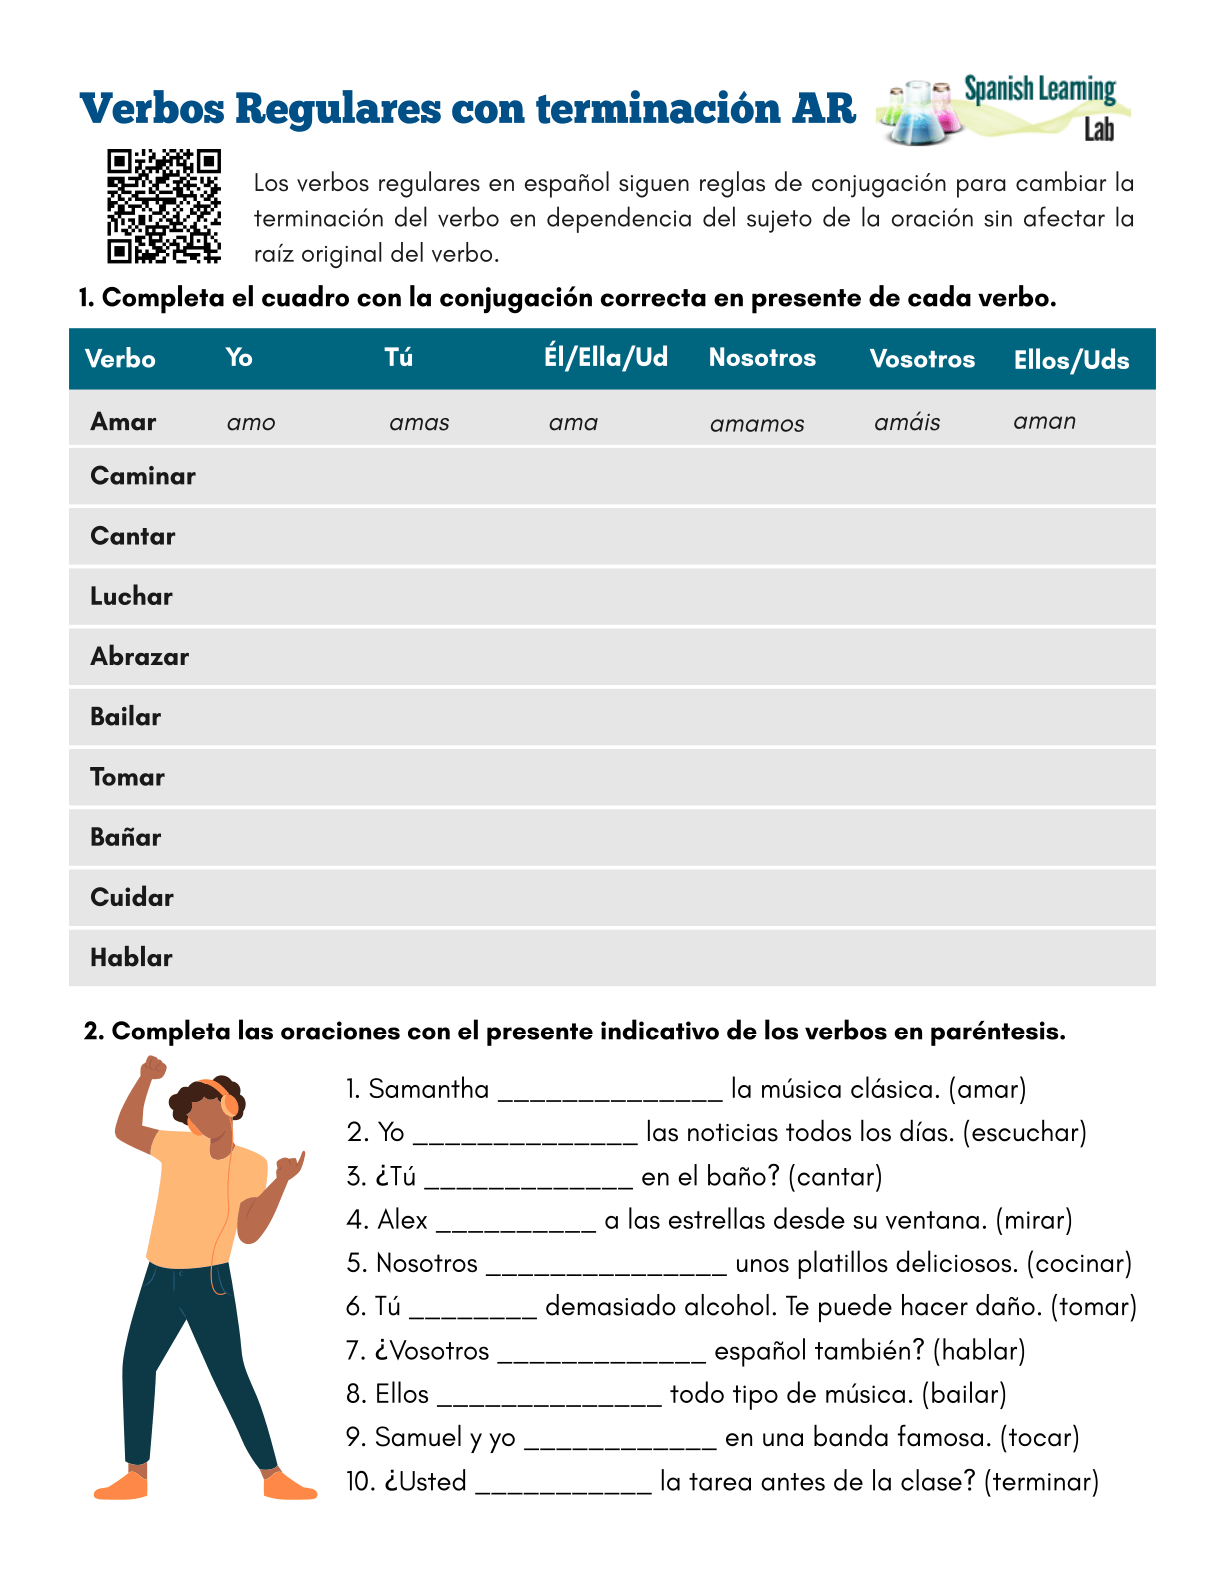 conjugando-los-verbos-regulares-con-terminaci-n-ar-ejercicios-en-pdf